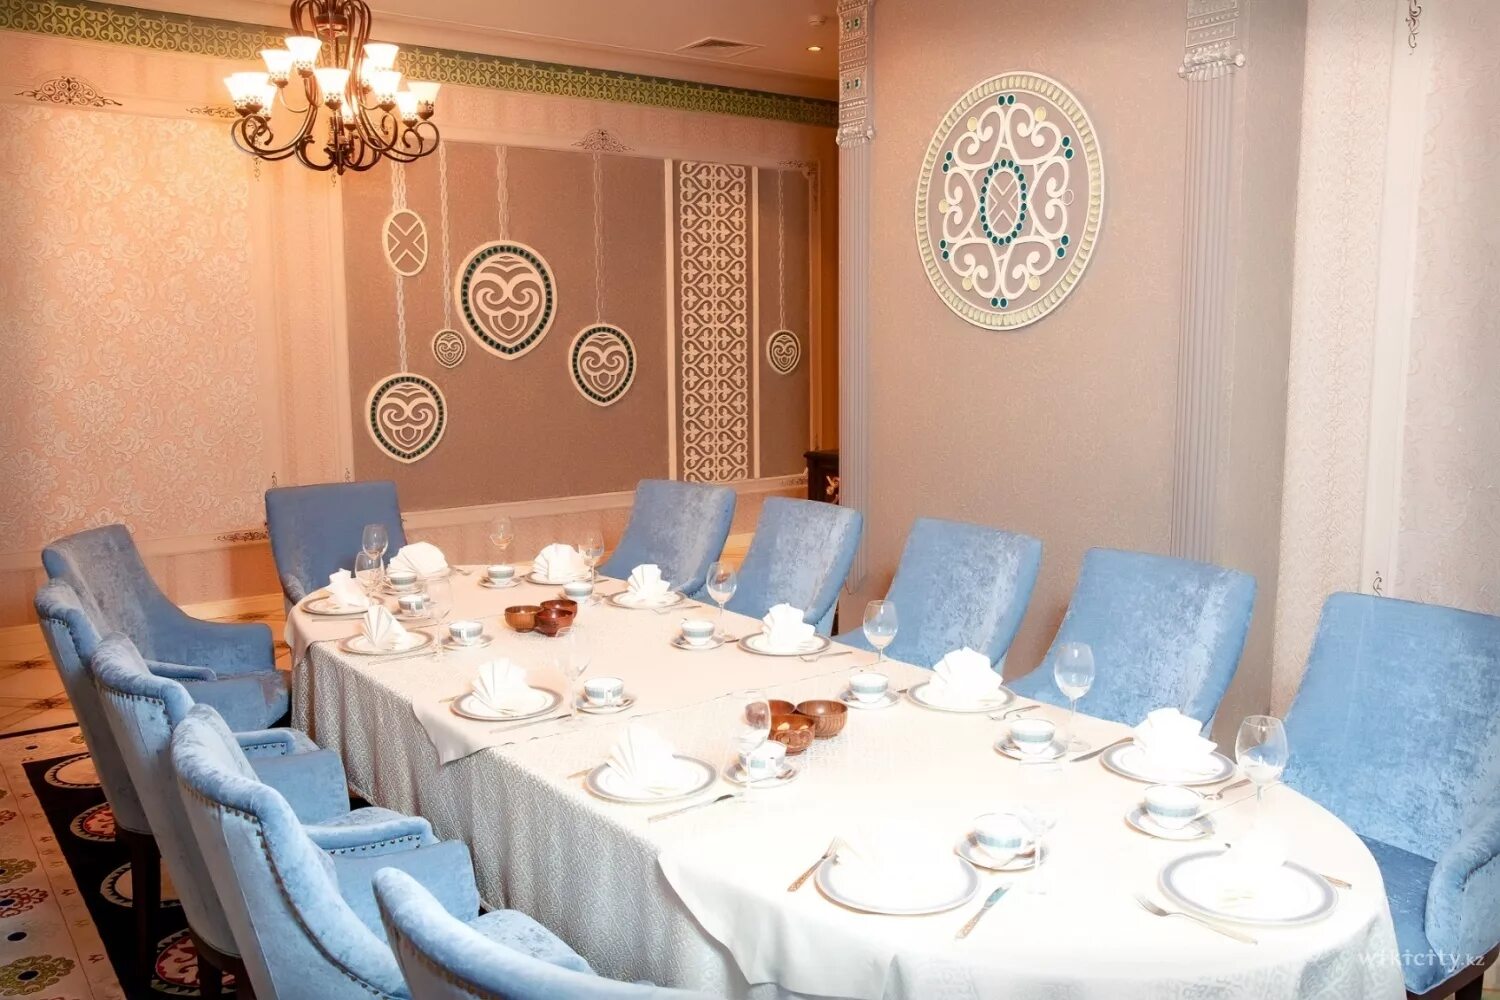 Кафе в казахском стиле. Ресторан в казахском стиле. Казахский интерьер для ресторана. Ресторан казахской кухни.